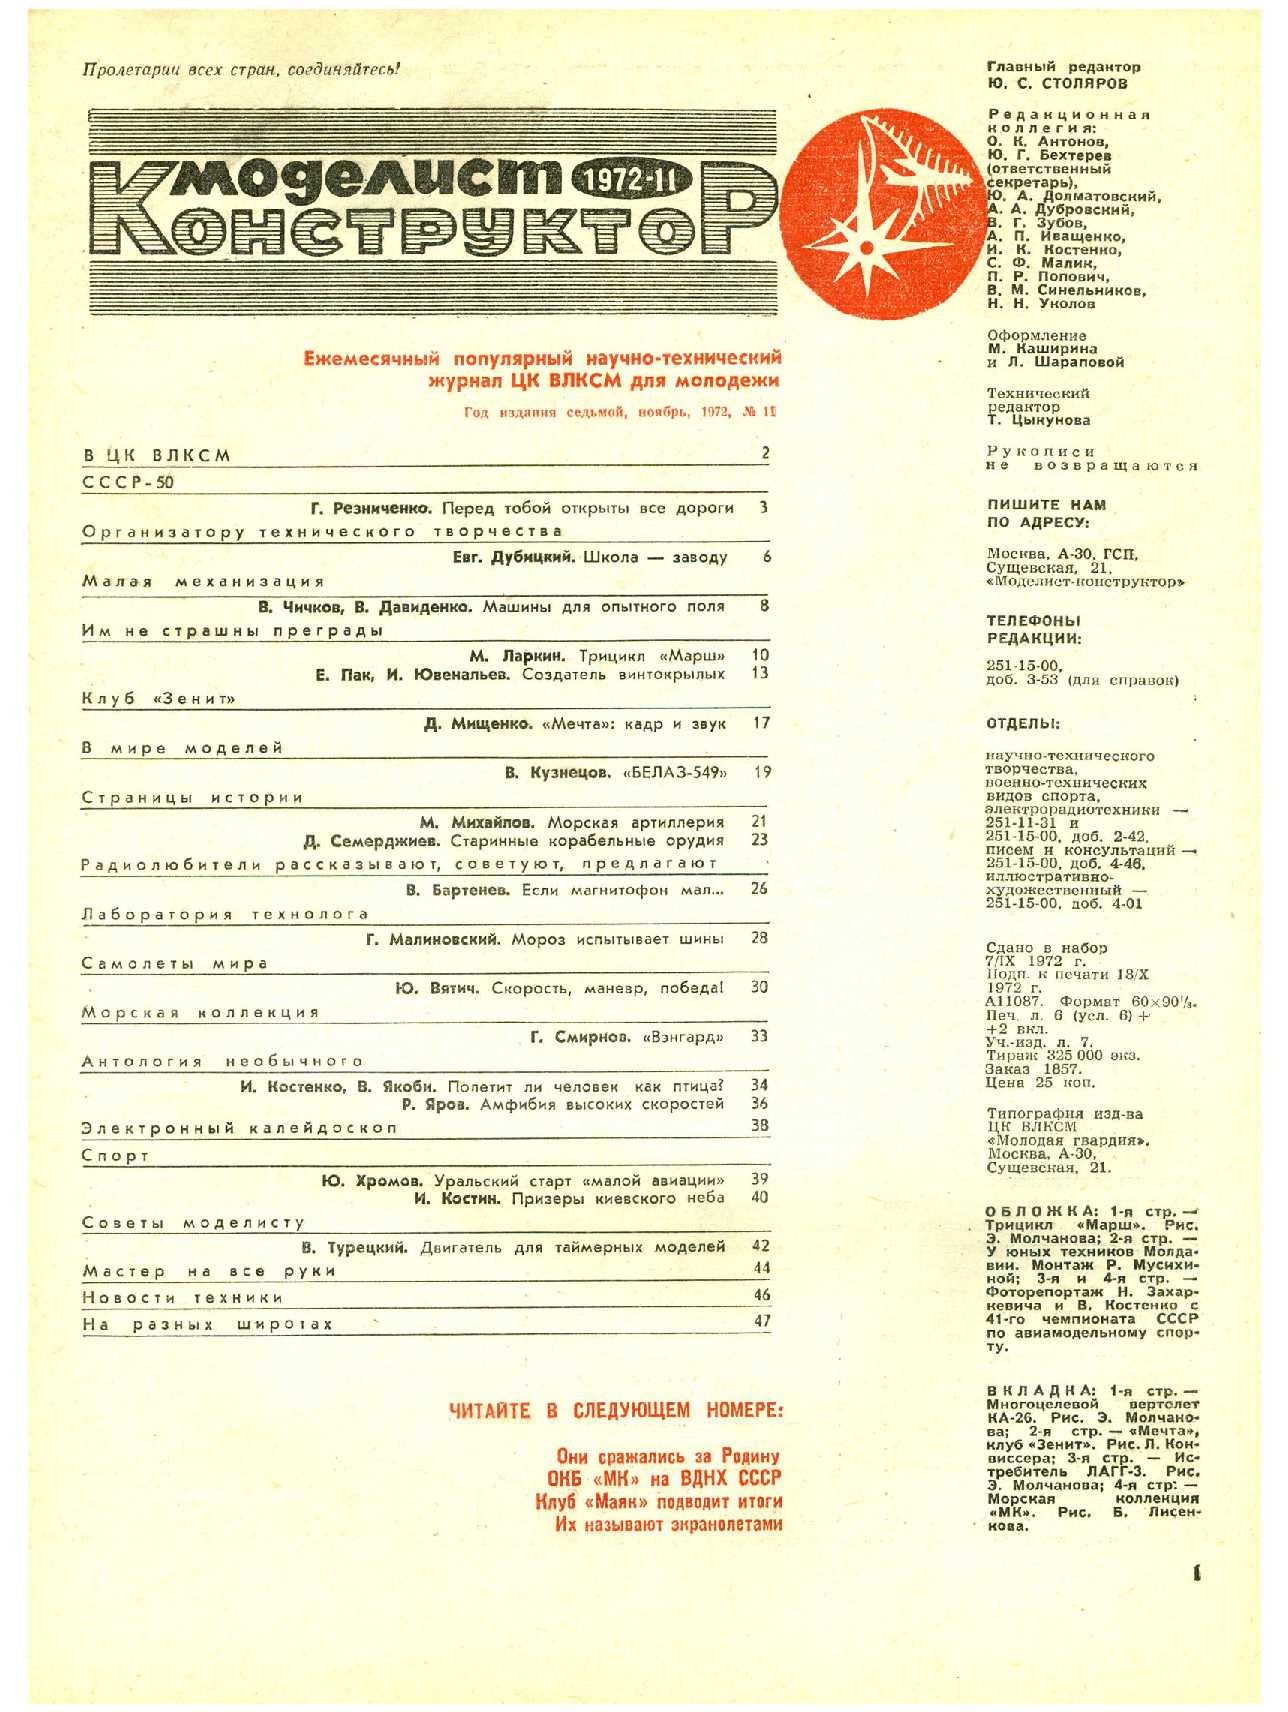 МК 11, 1972, 1 c.